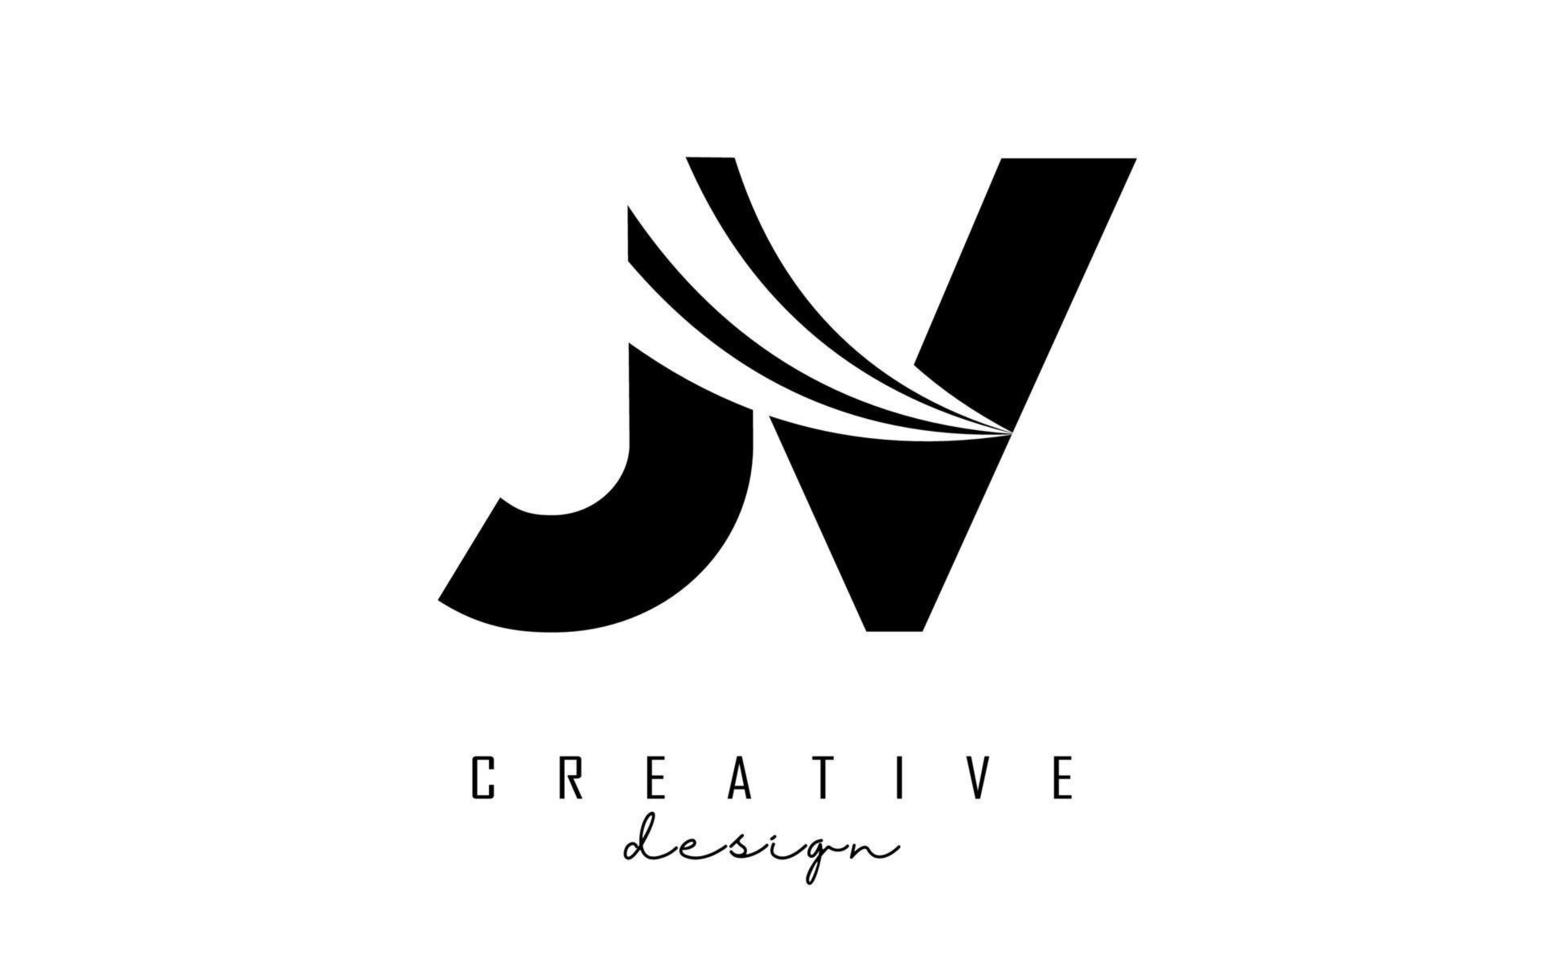 Logotipo creativo de letras negras jv jv con líneas principales y diseño de concepto de carretera. letras con diseño geométrico. vector